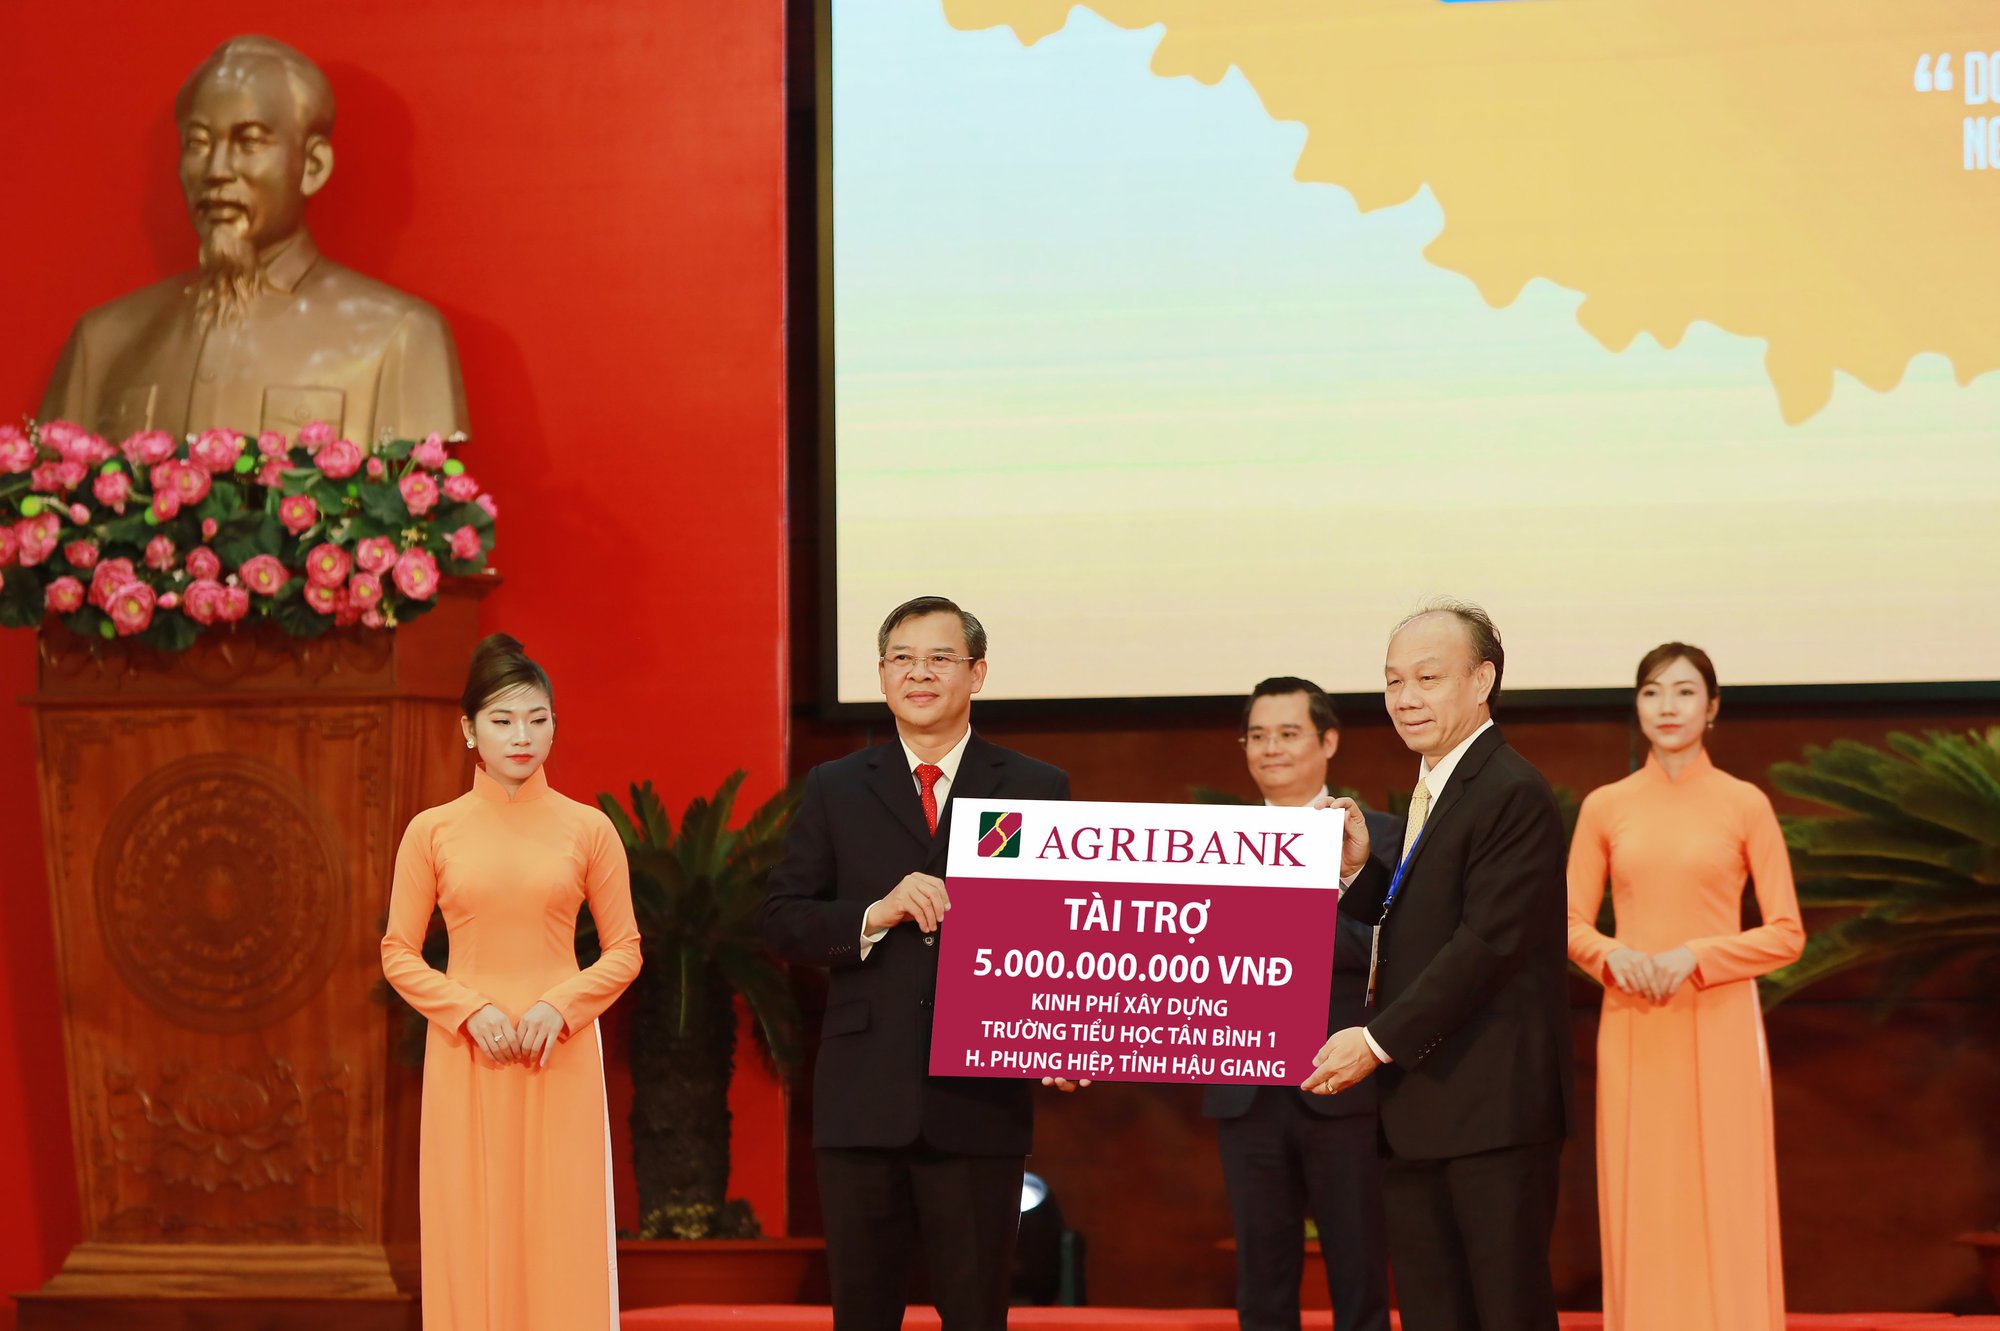 Agribank tài trợ 5 tỷ đồng xây dựng Trường Tiểu học tại huyện Phụng Hiệp, tỉnh Hậu Giang - Ảnh 2.